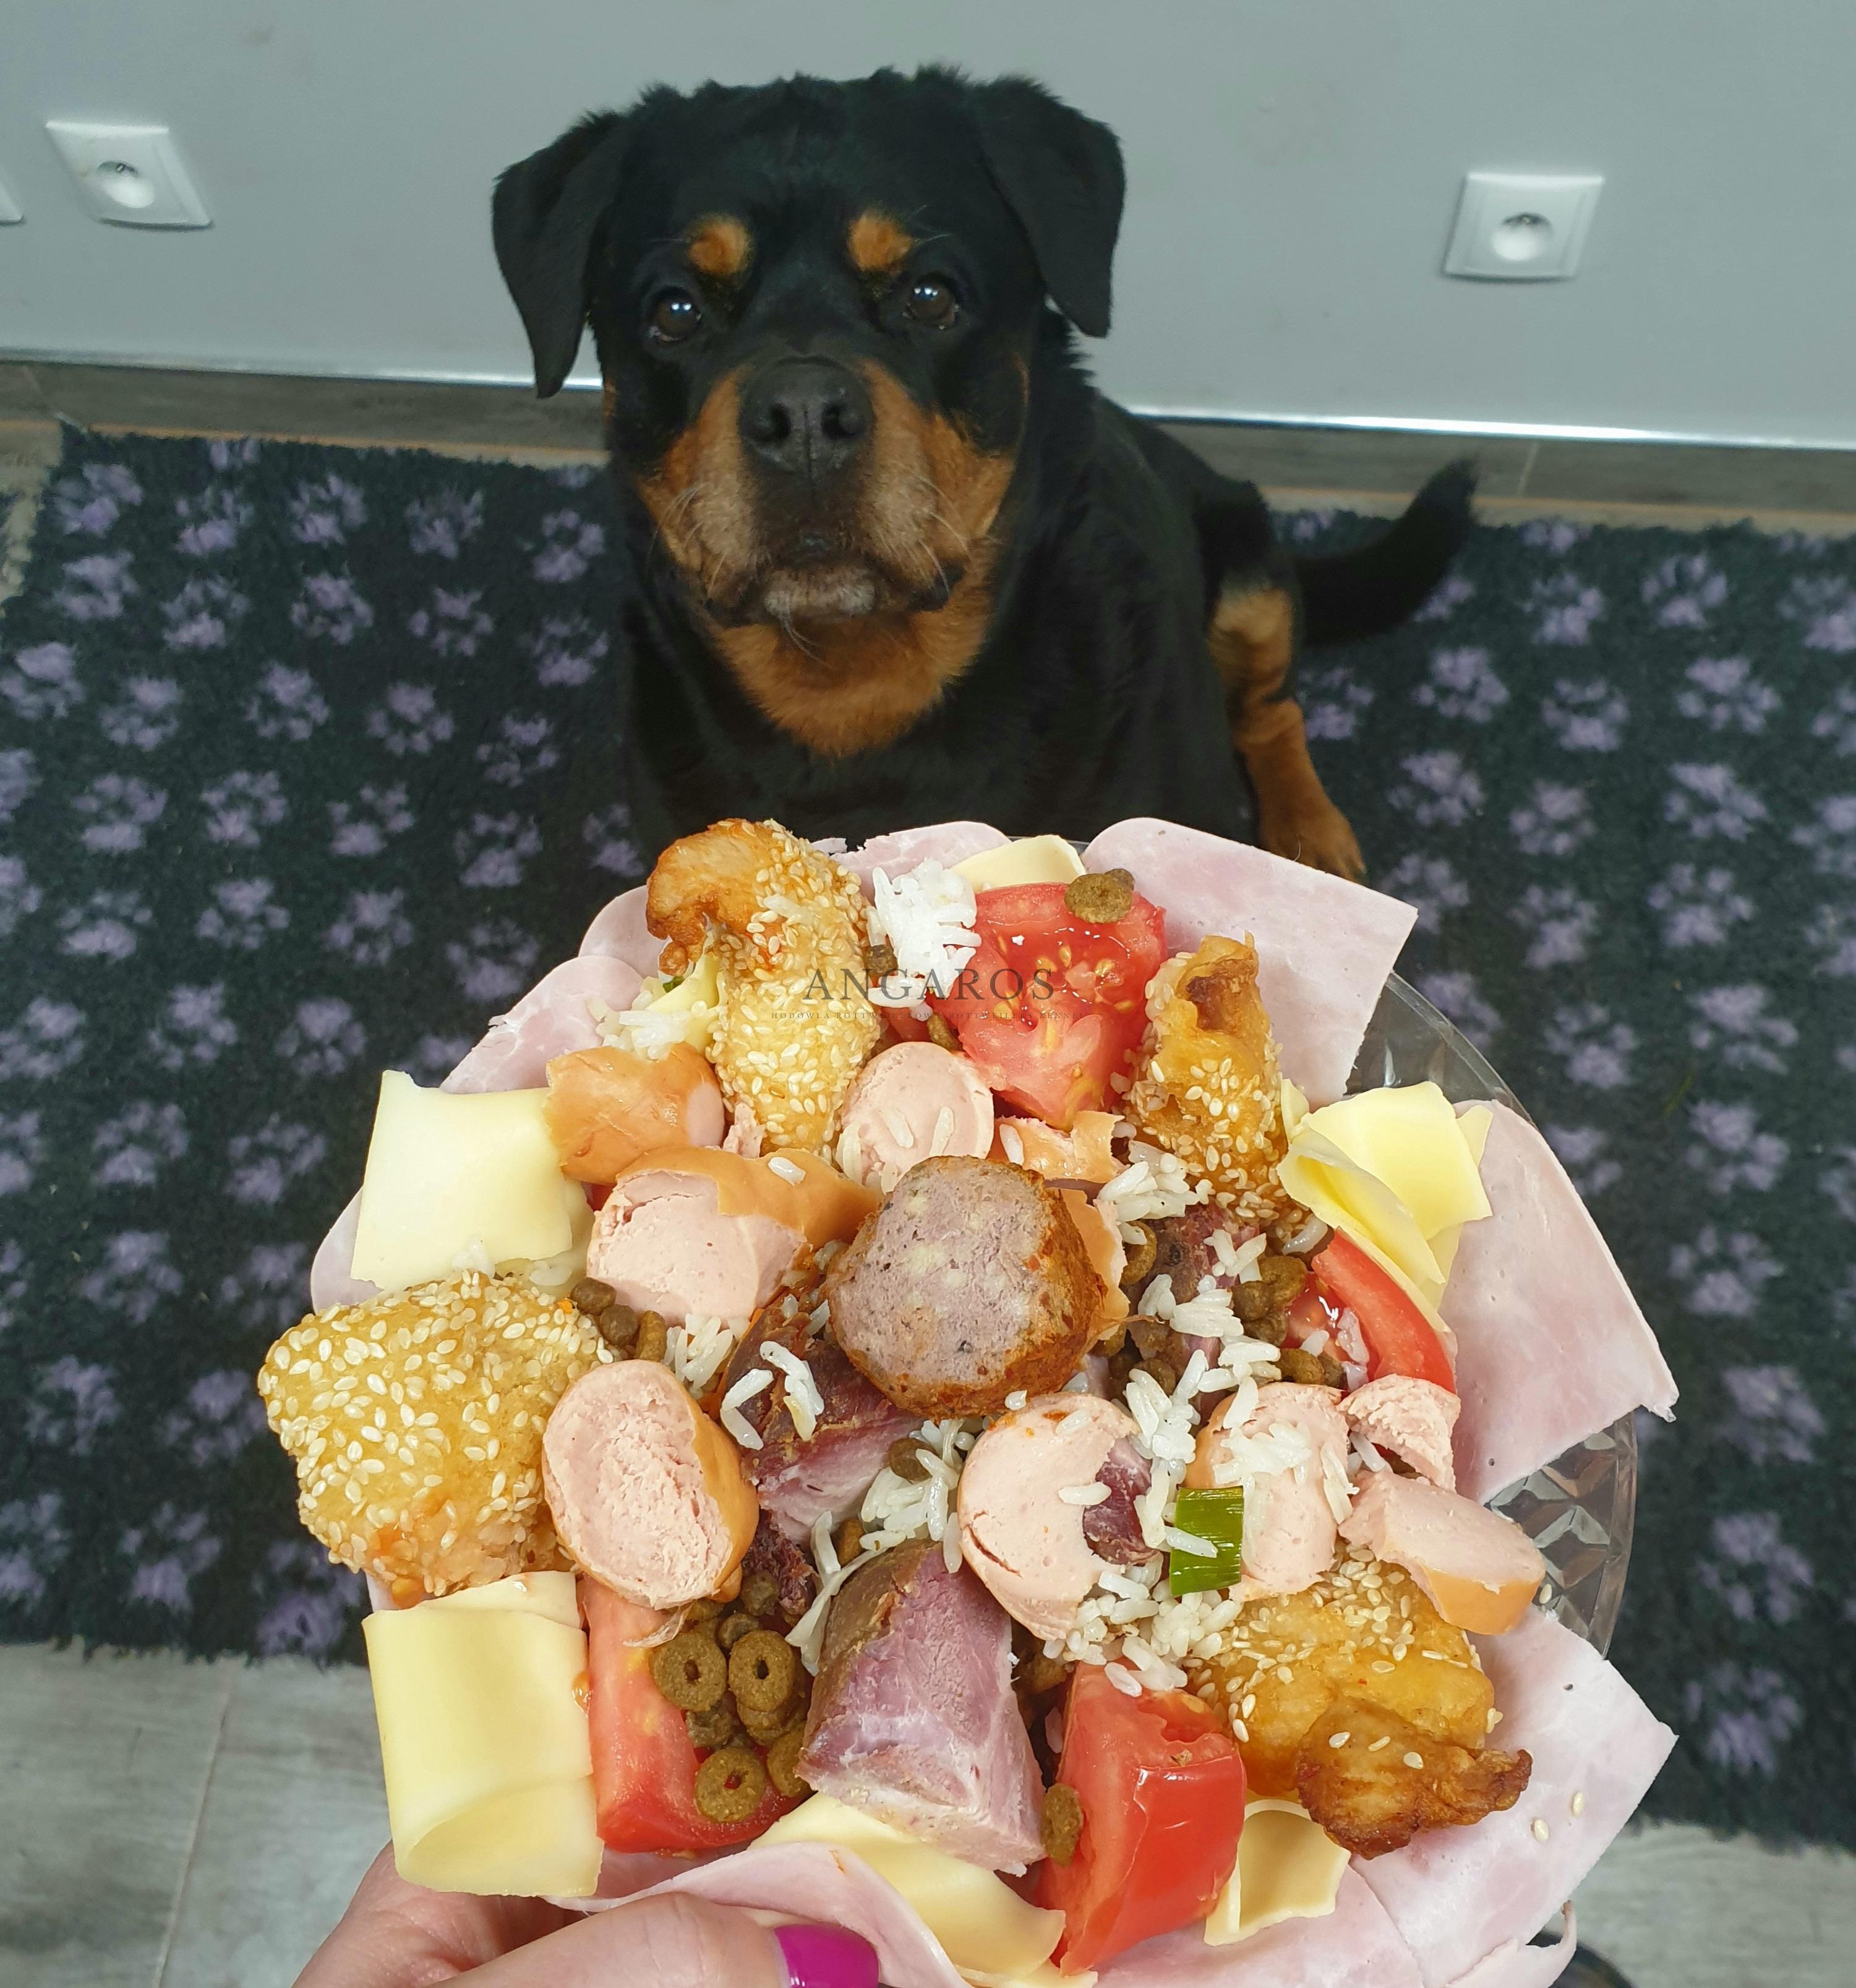 Nasza kochana NOVA Angaros (babcia miotu S) obchodziła wczoraj 10 urodziny! | Rottweiler - Hodowla Rottweilerów Angaros - Rottweilers - Rottweilery